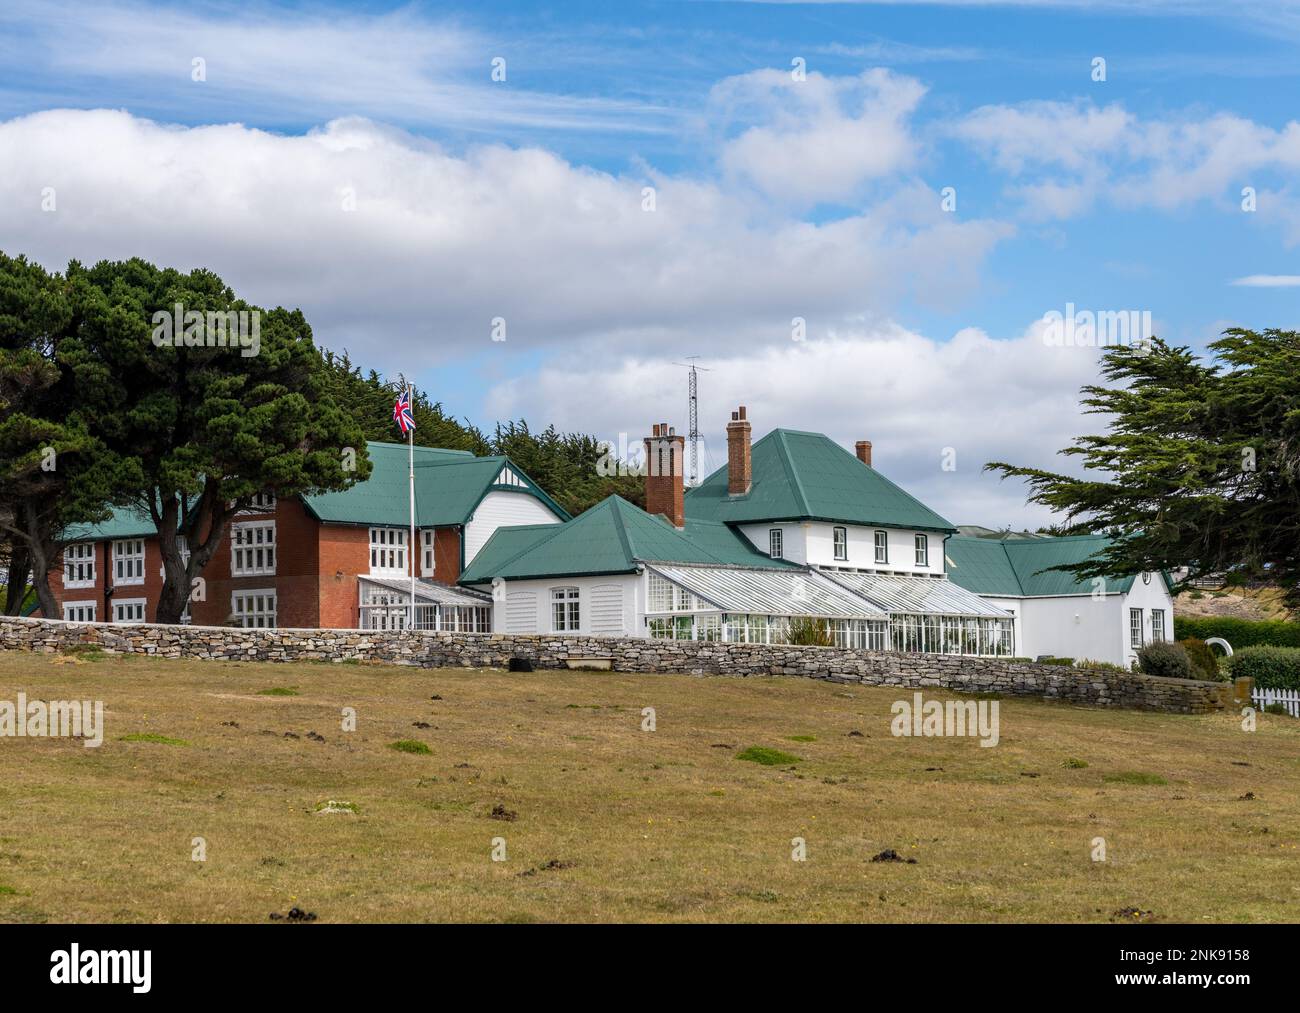 Maison du gouvernement, résidence officielle du gouverneur construite en 1845 dans les îles Falkland de Stanley Banque D'Images